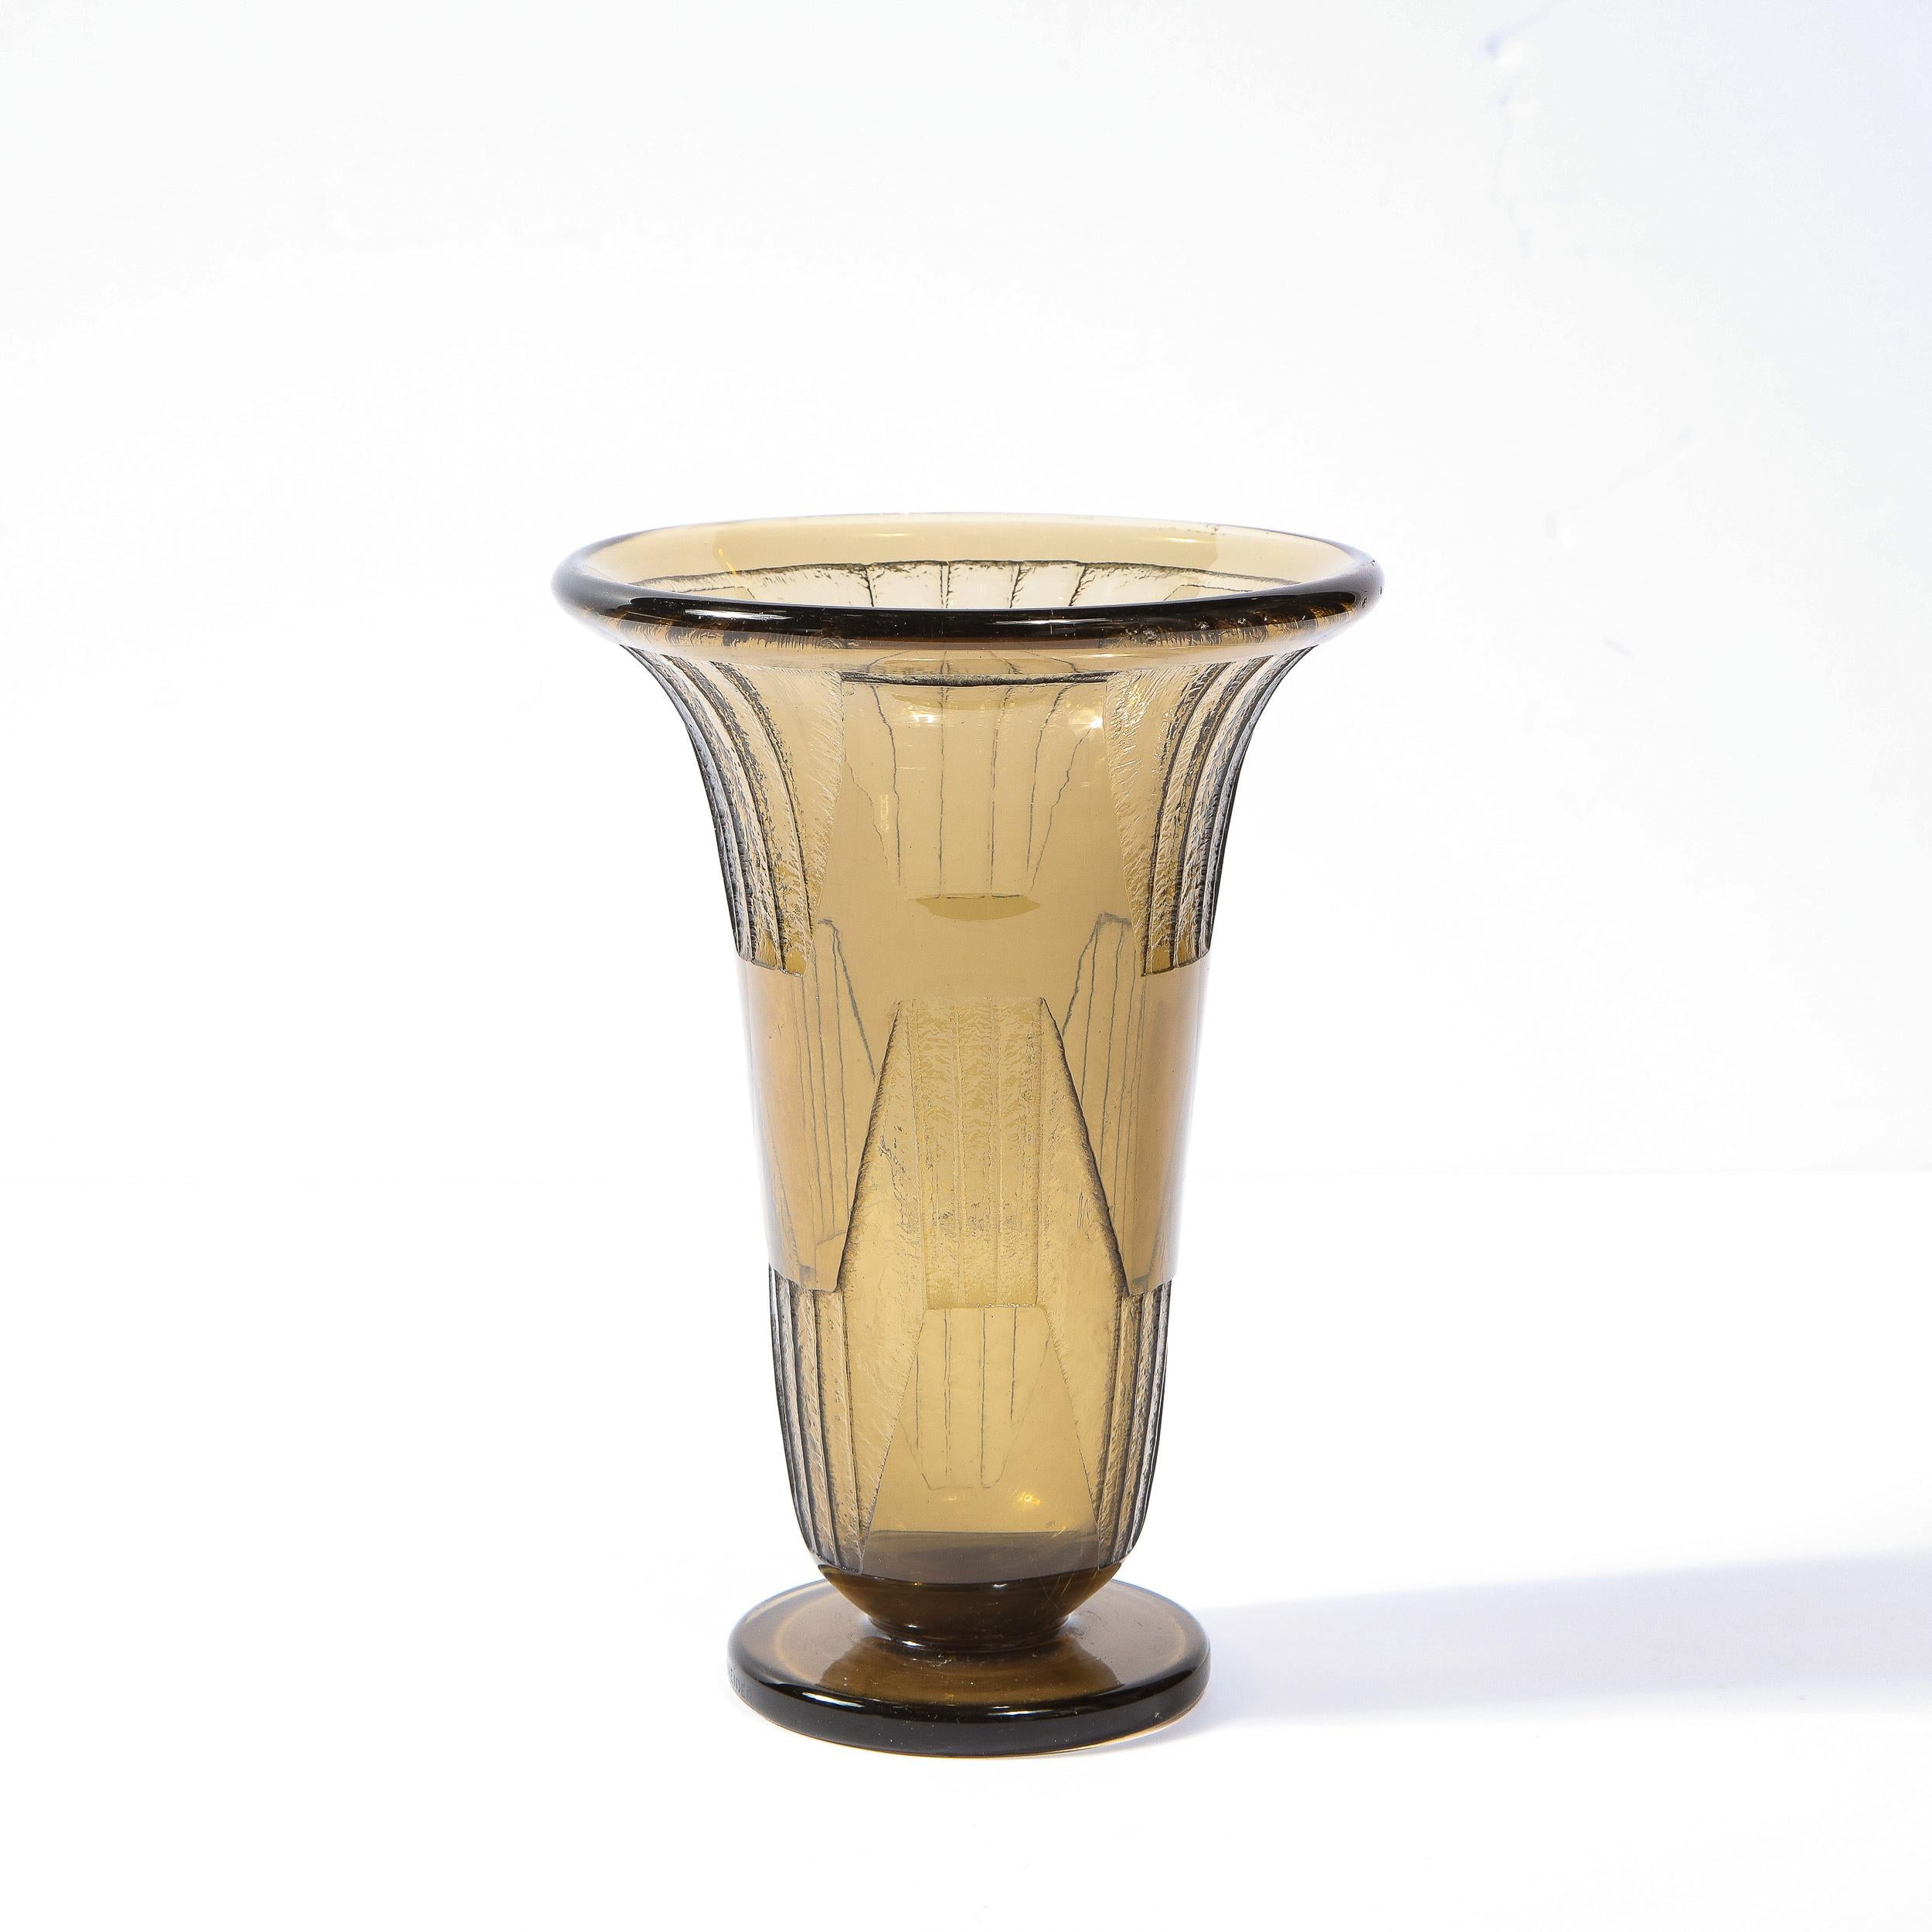 Ce magnifique vase en verre Art Déco français de qualité musée, de couleur topaze et de style «ubiste », réalisé par Schneider, est décoré d'un motif géométrique « gravé à l'acide » avec des lignes verticales gravées. Charles Schneider, qui avait